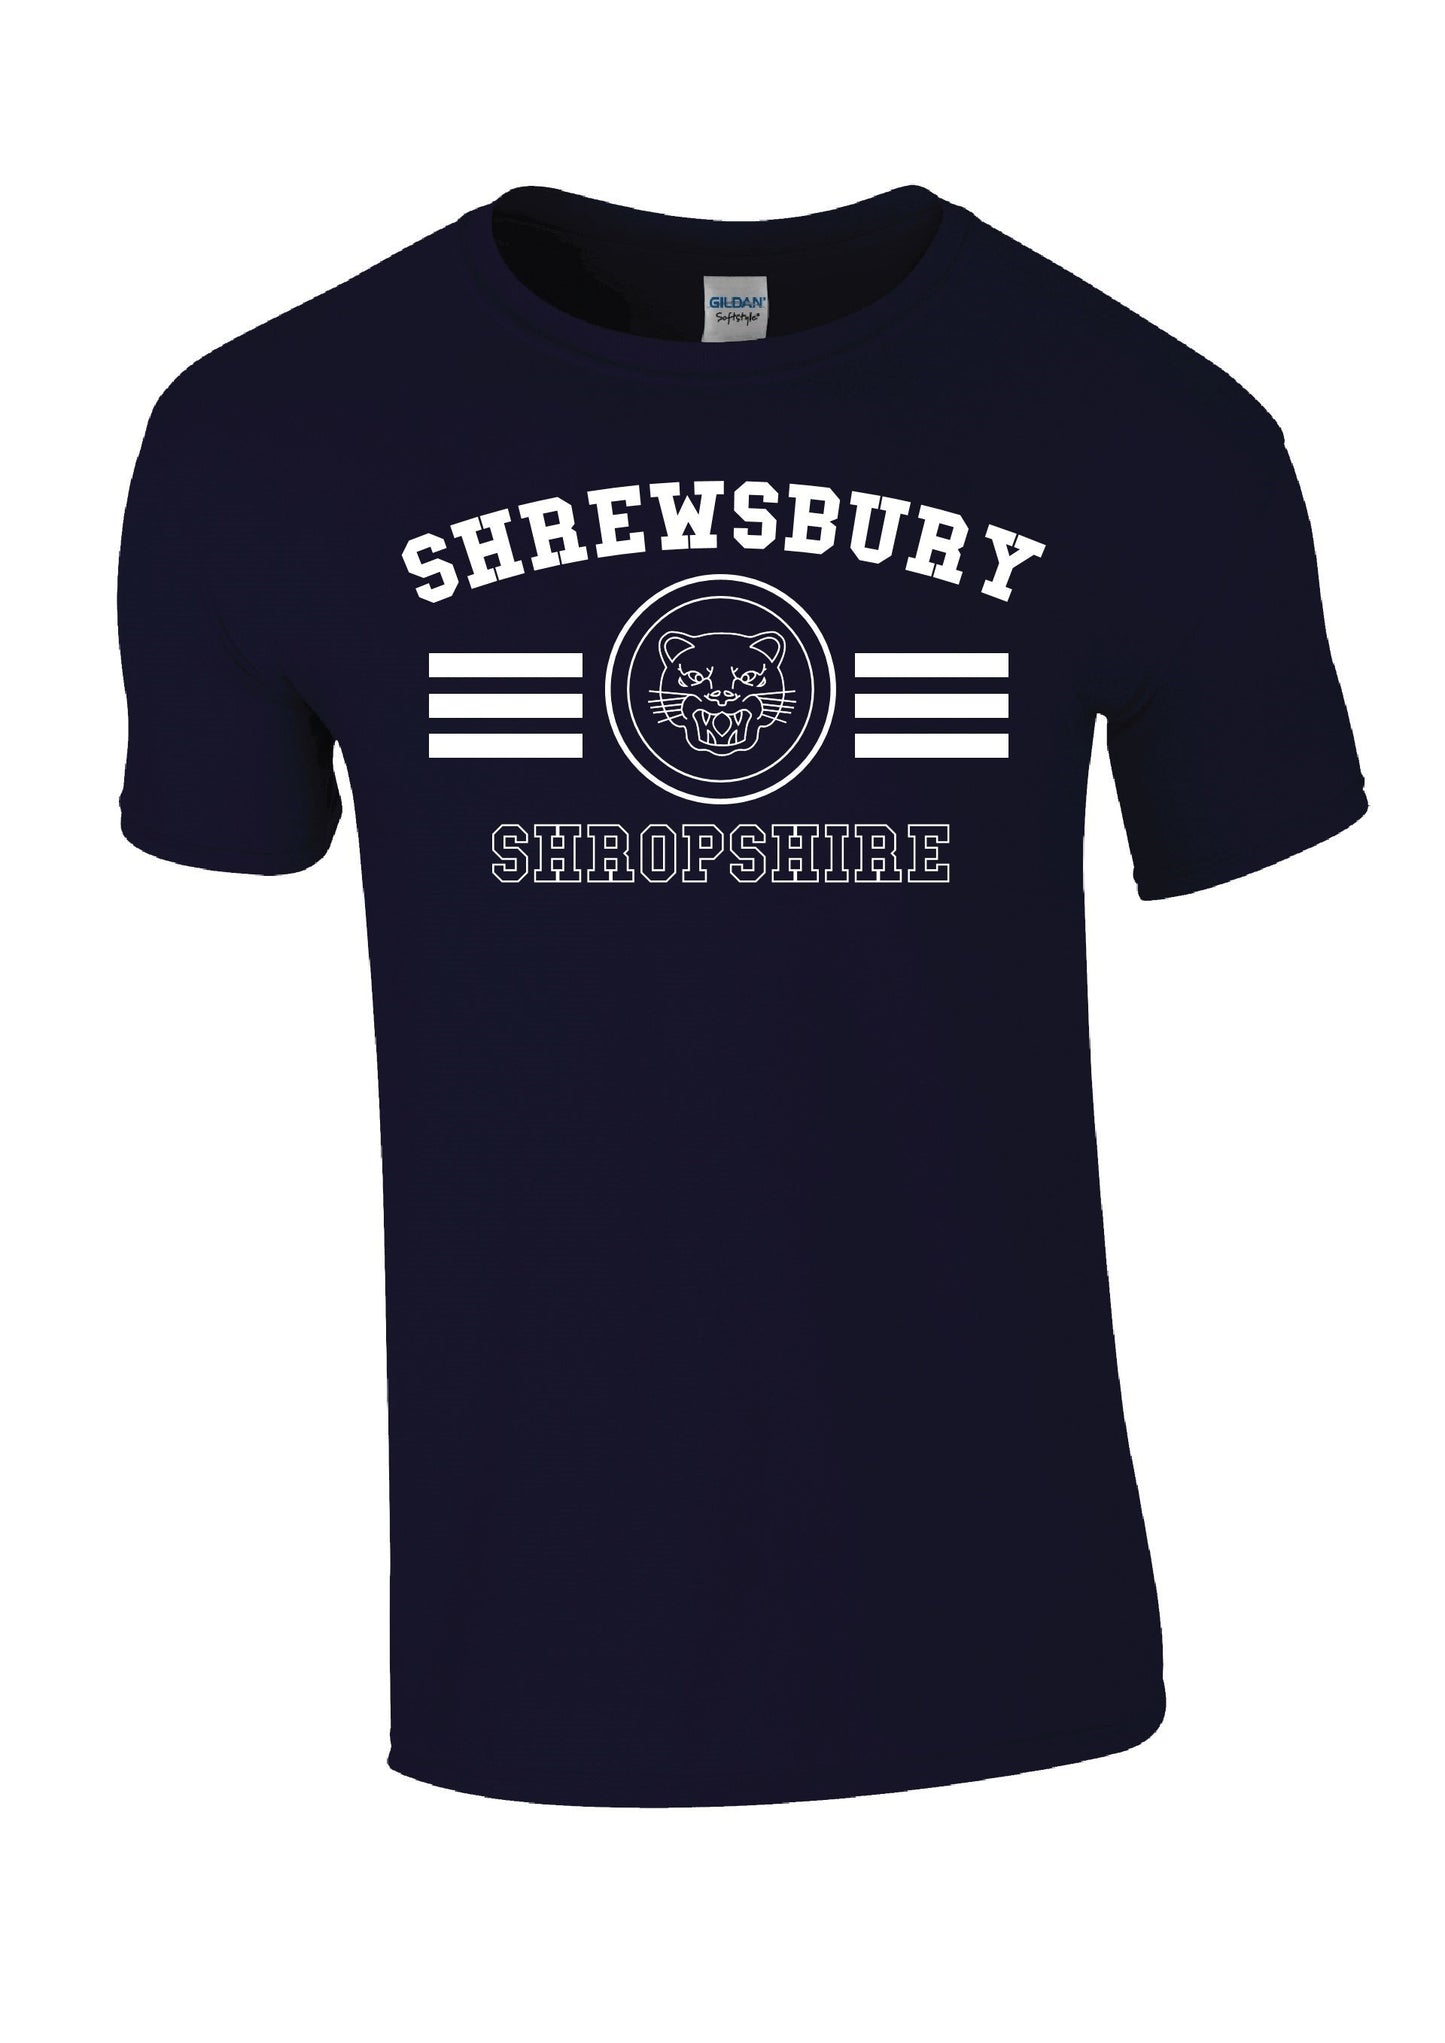 Shrewsbury Tiger T-shirt - Navy - M